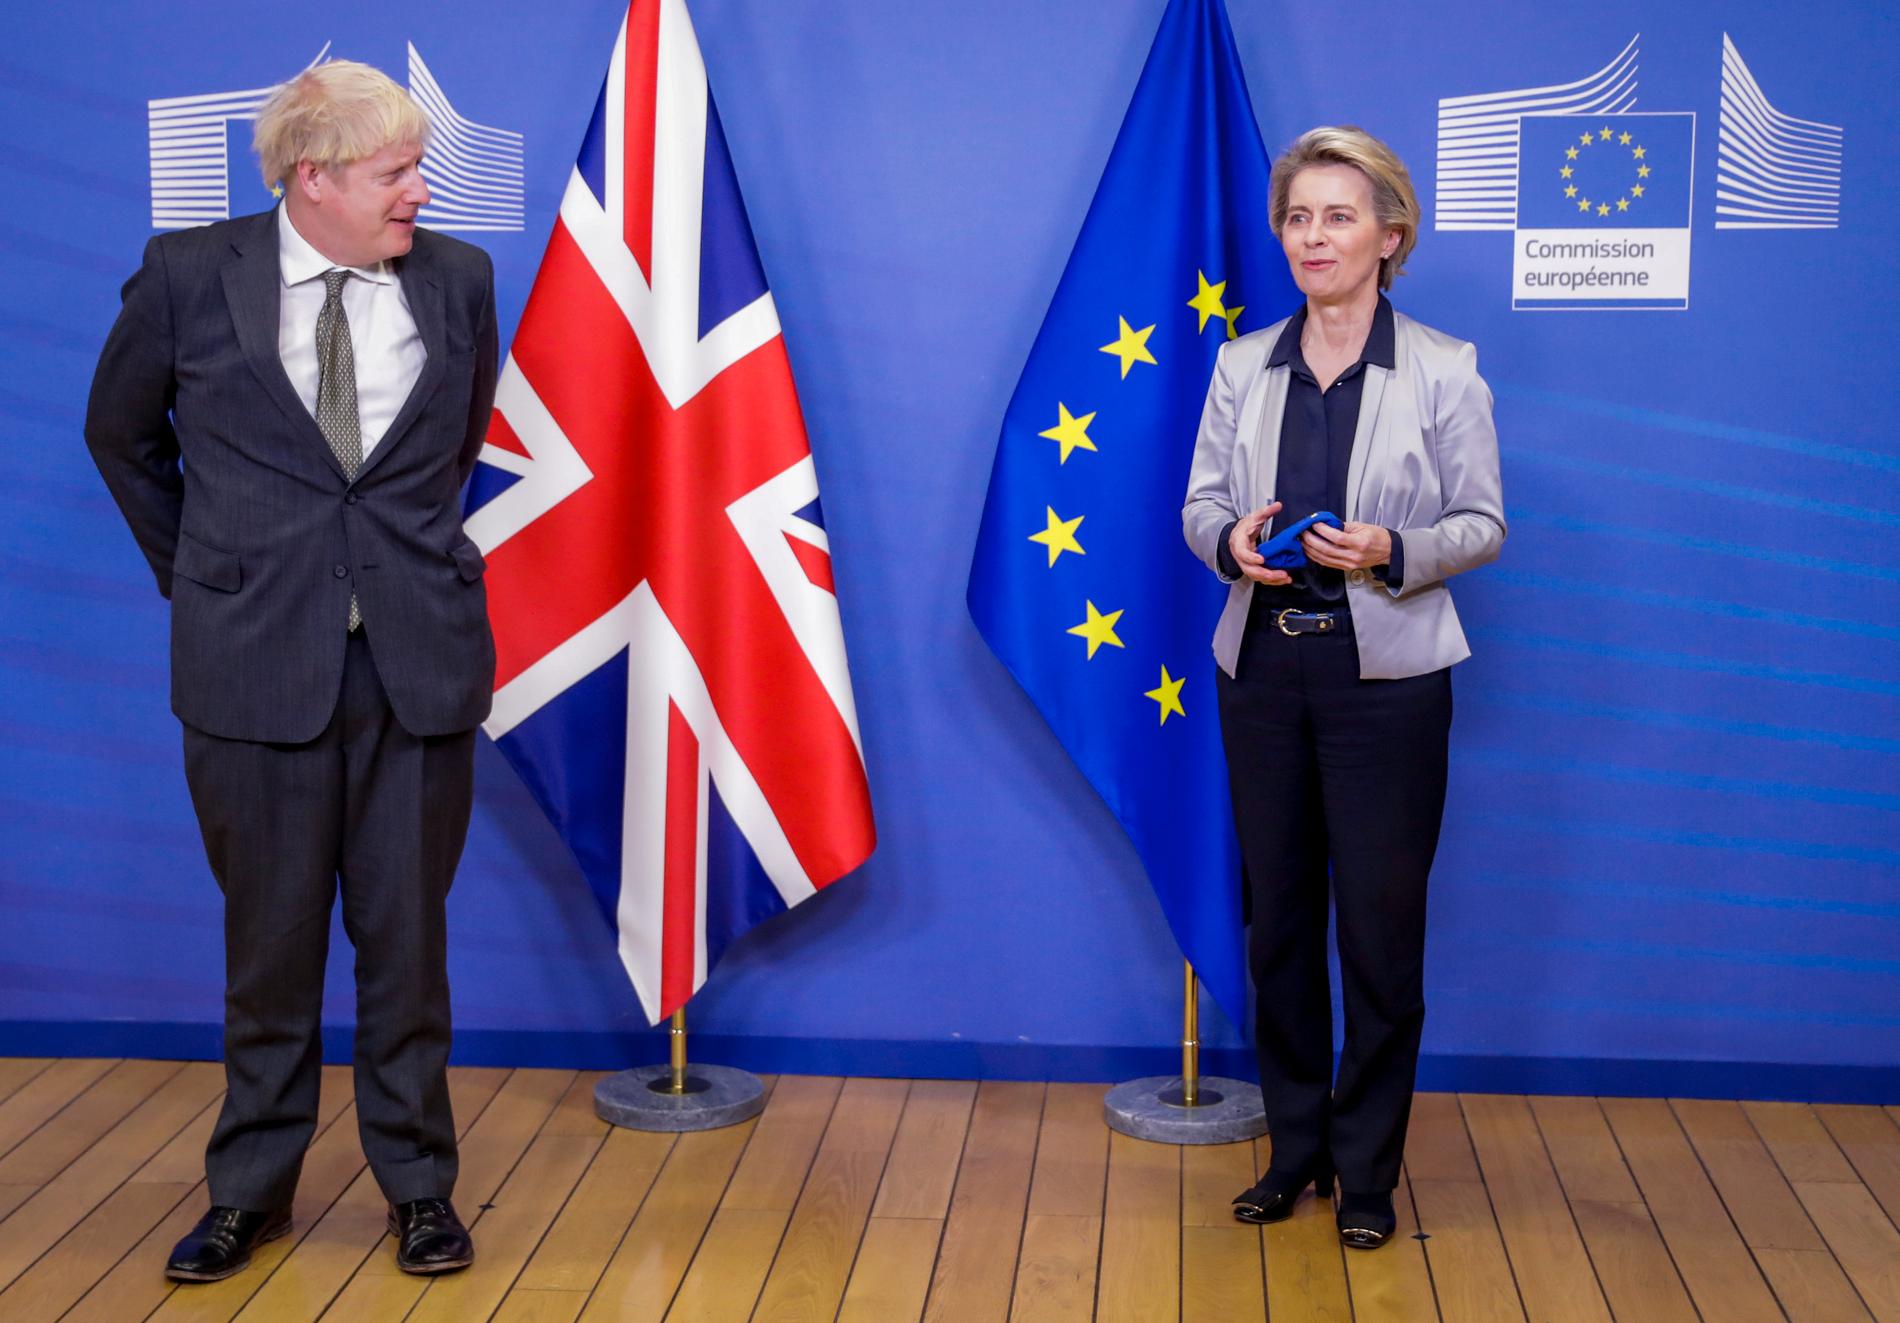 Storbritanniens premiärminister Boris Johnson och EU-kommissionens ordförande Ursula von der Leyen.